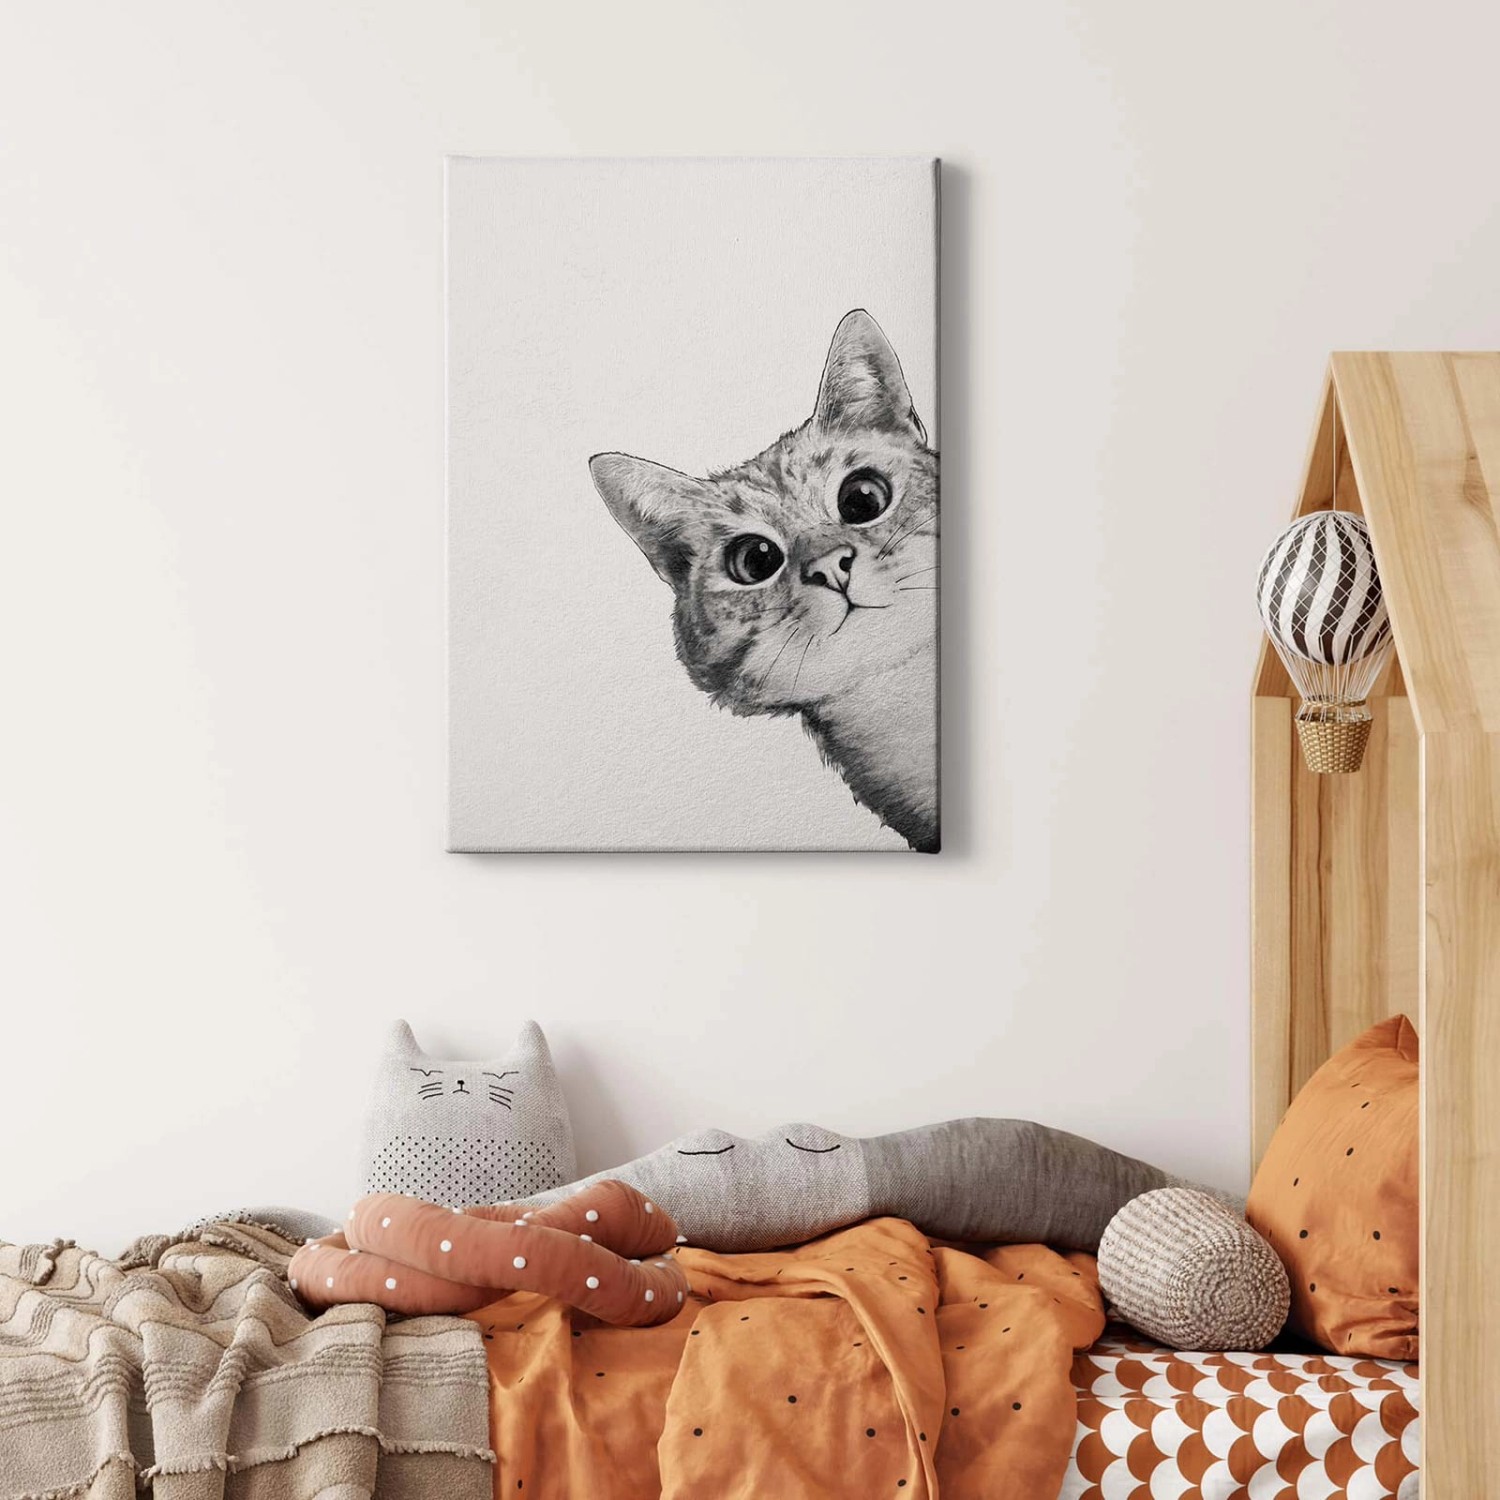 Bricoflor Bild Mit Katze Gezeichnet Modernes Leinwand Bild Mit Zeichnung Von Tier Grafik Wandbild In Schwarz Weiß Für Ki